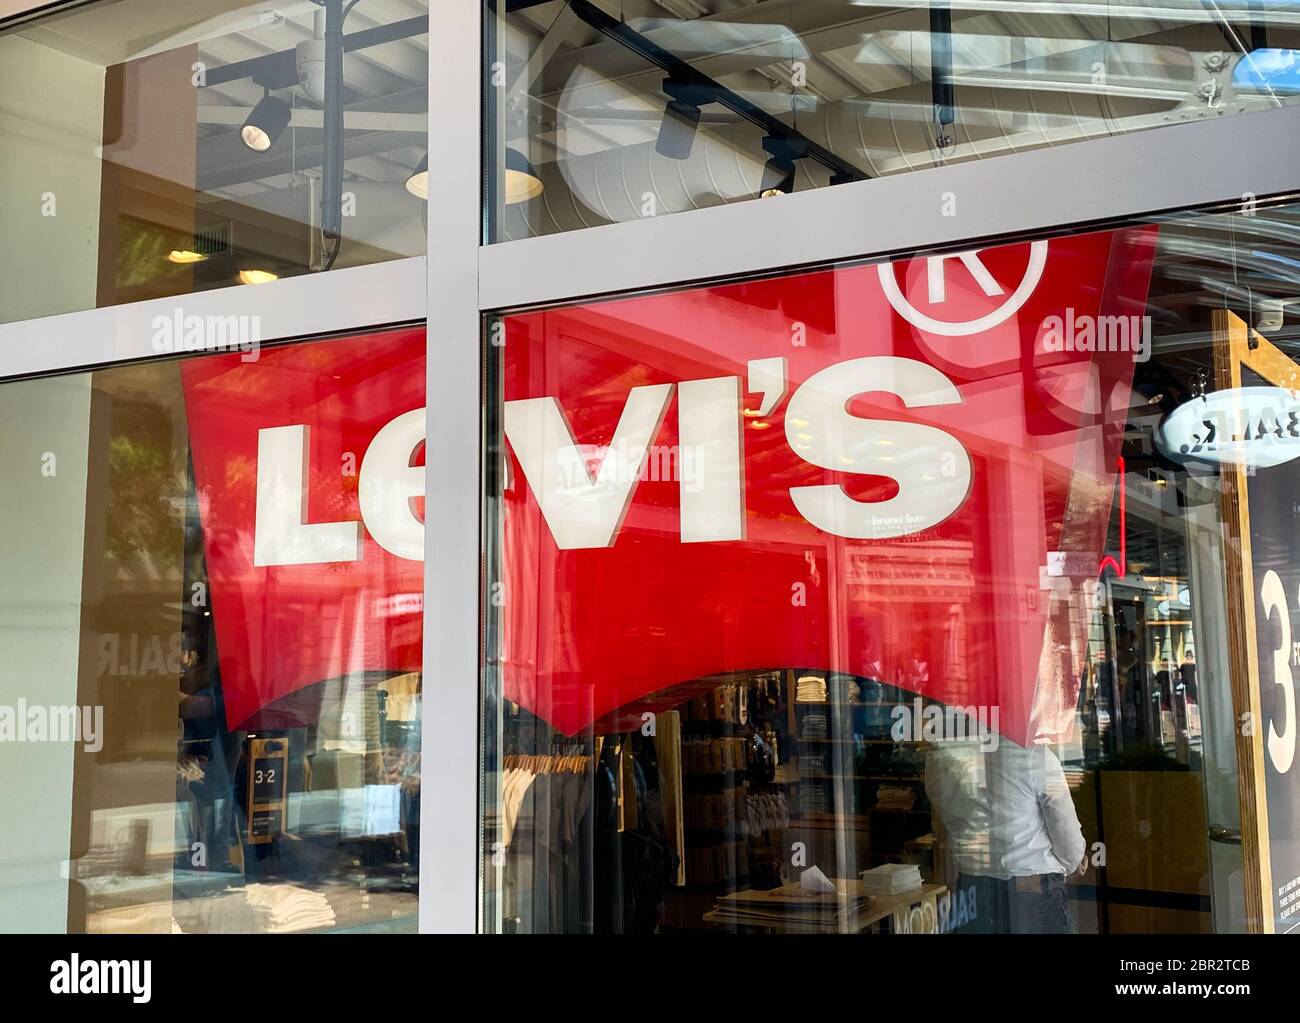 levis shop nottingham